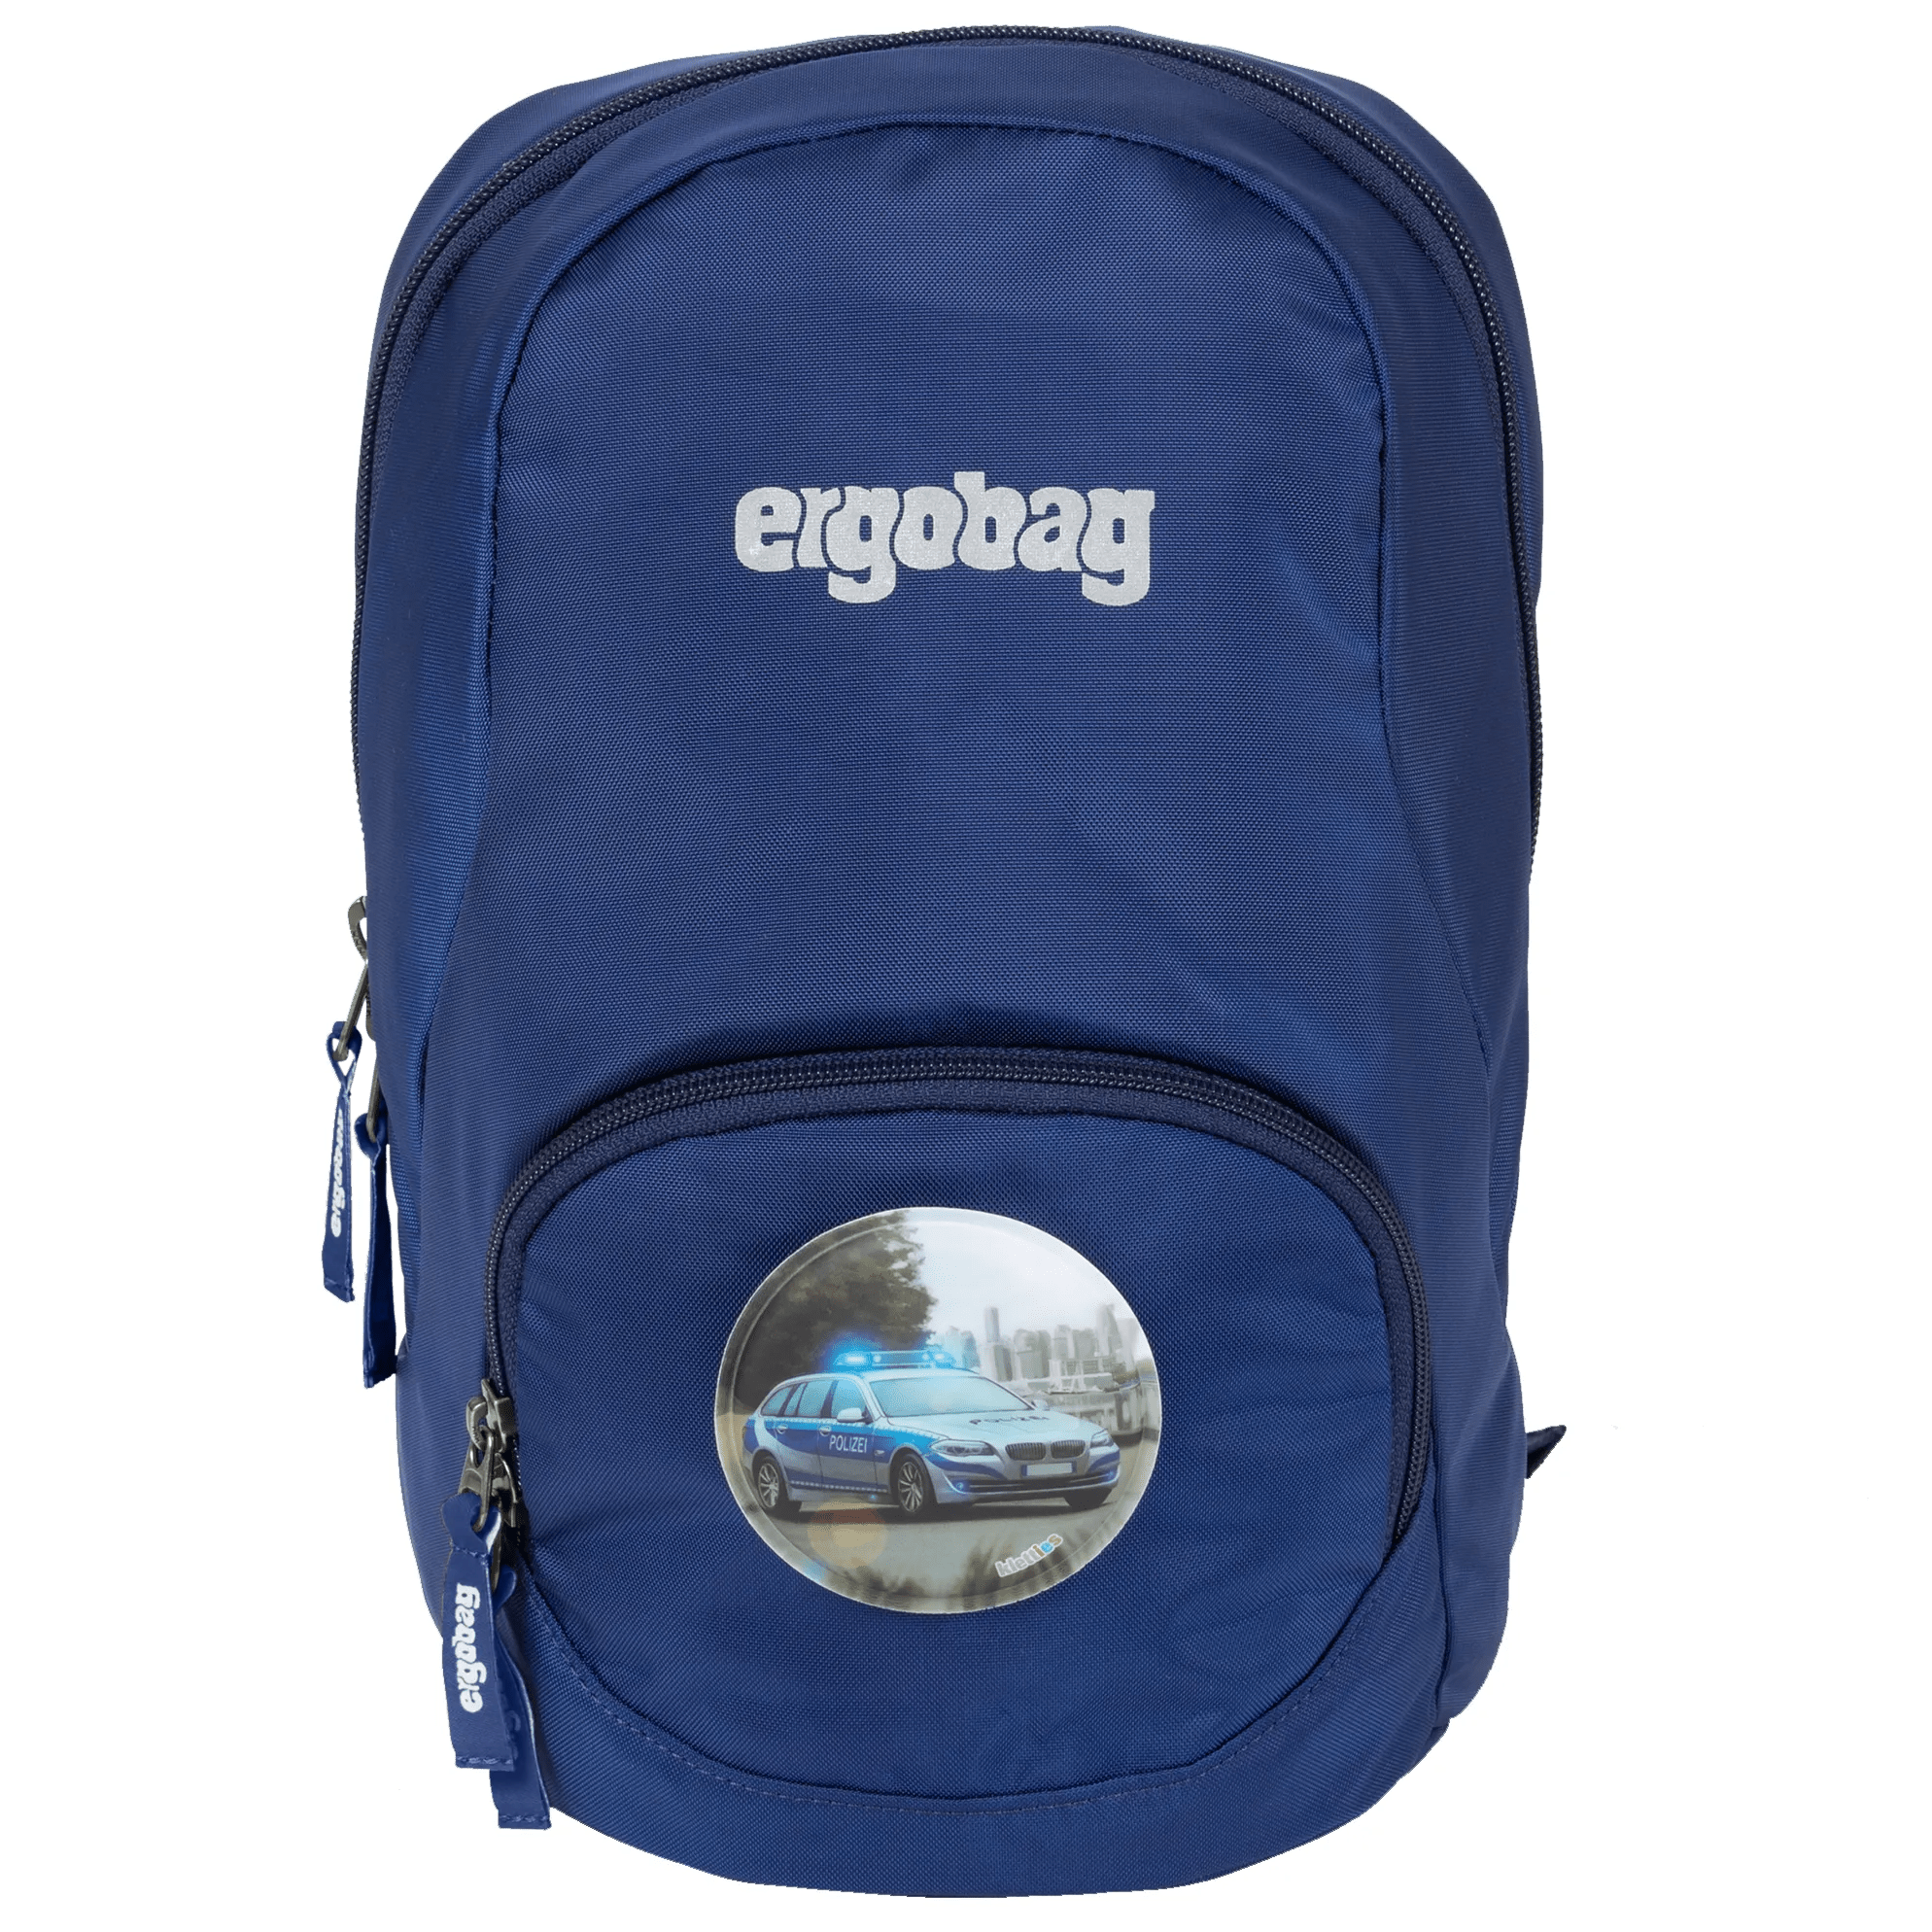 Ergobag Ease Small children's backpack 30 cm - blue light